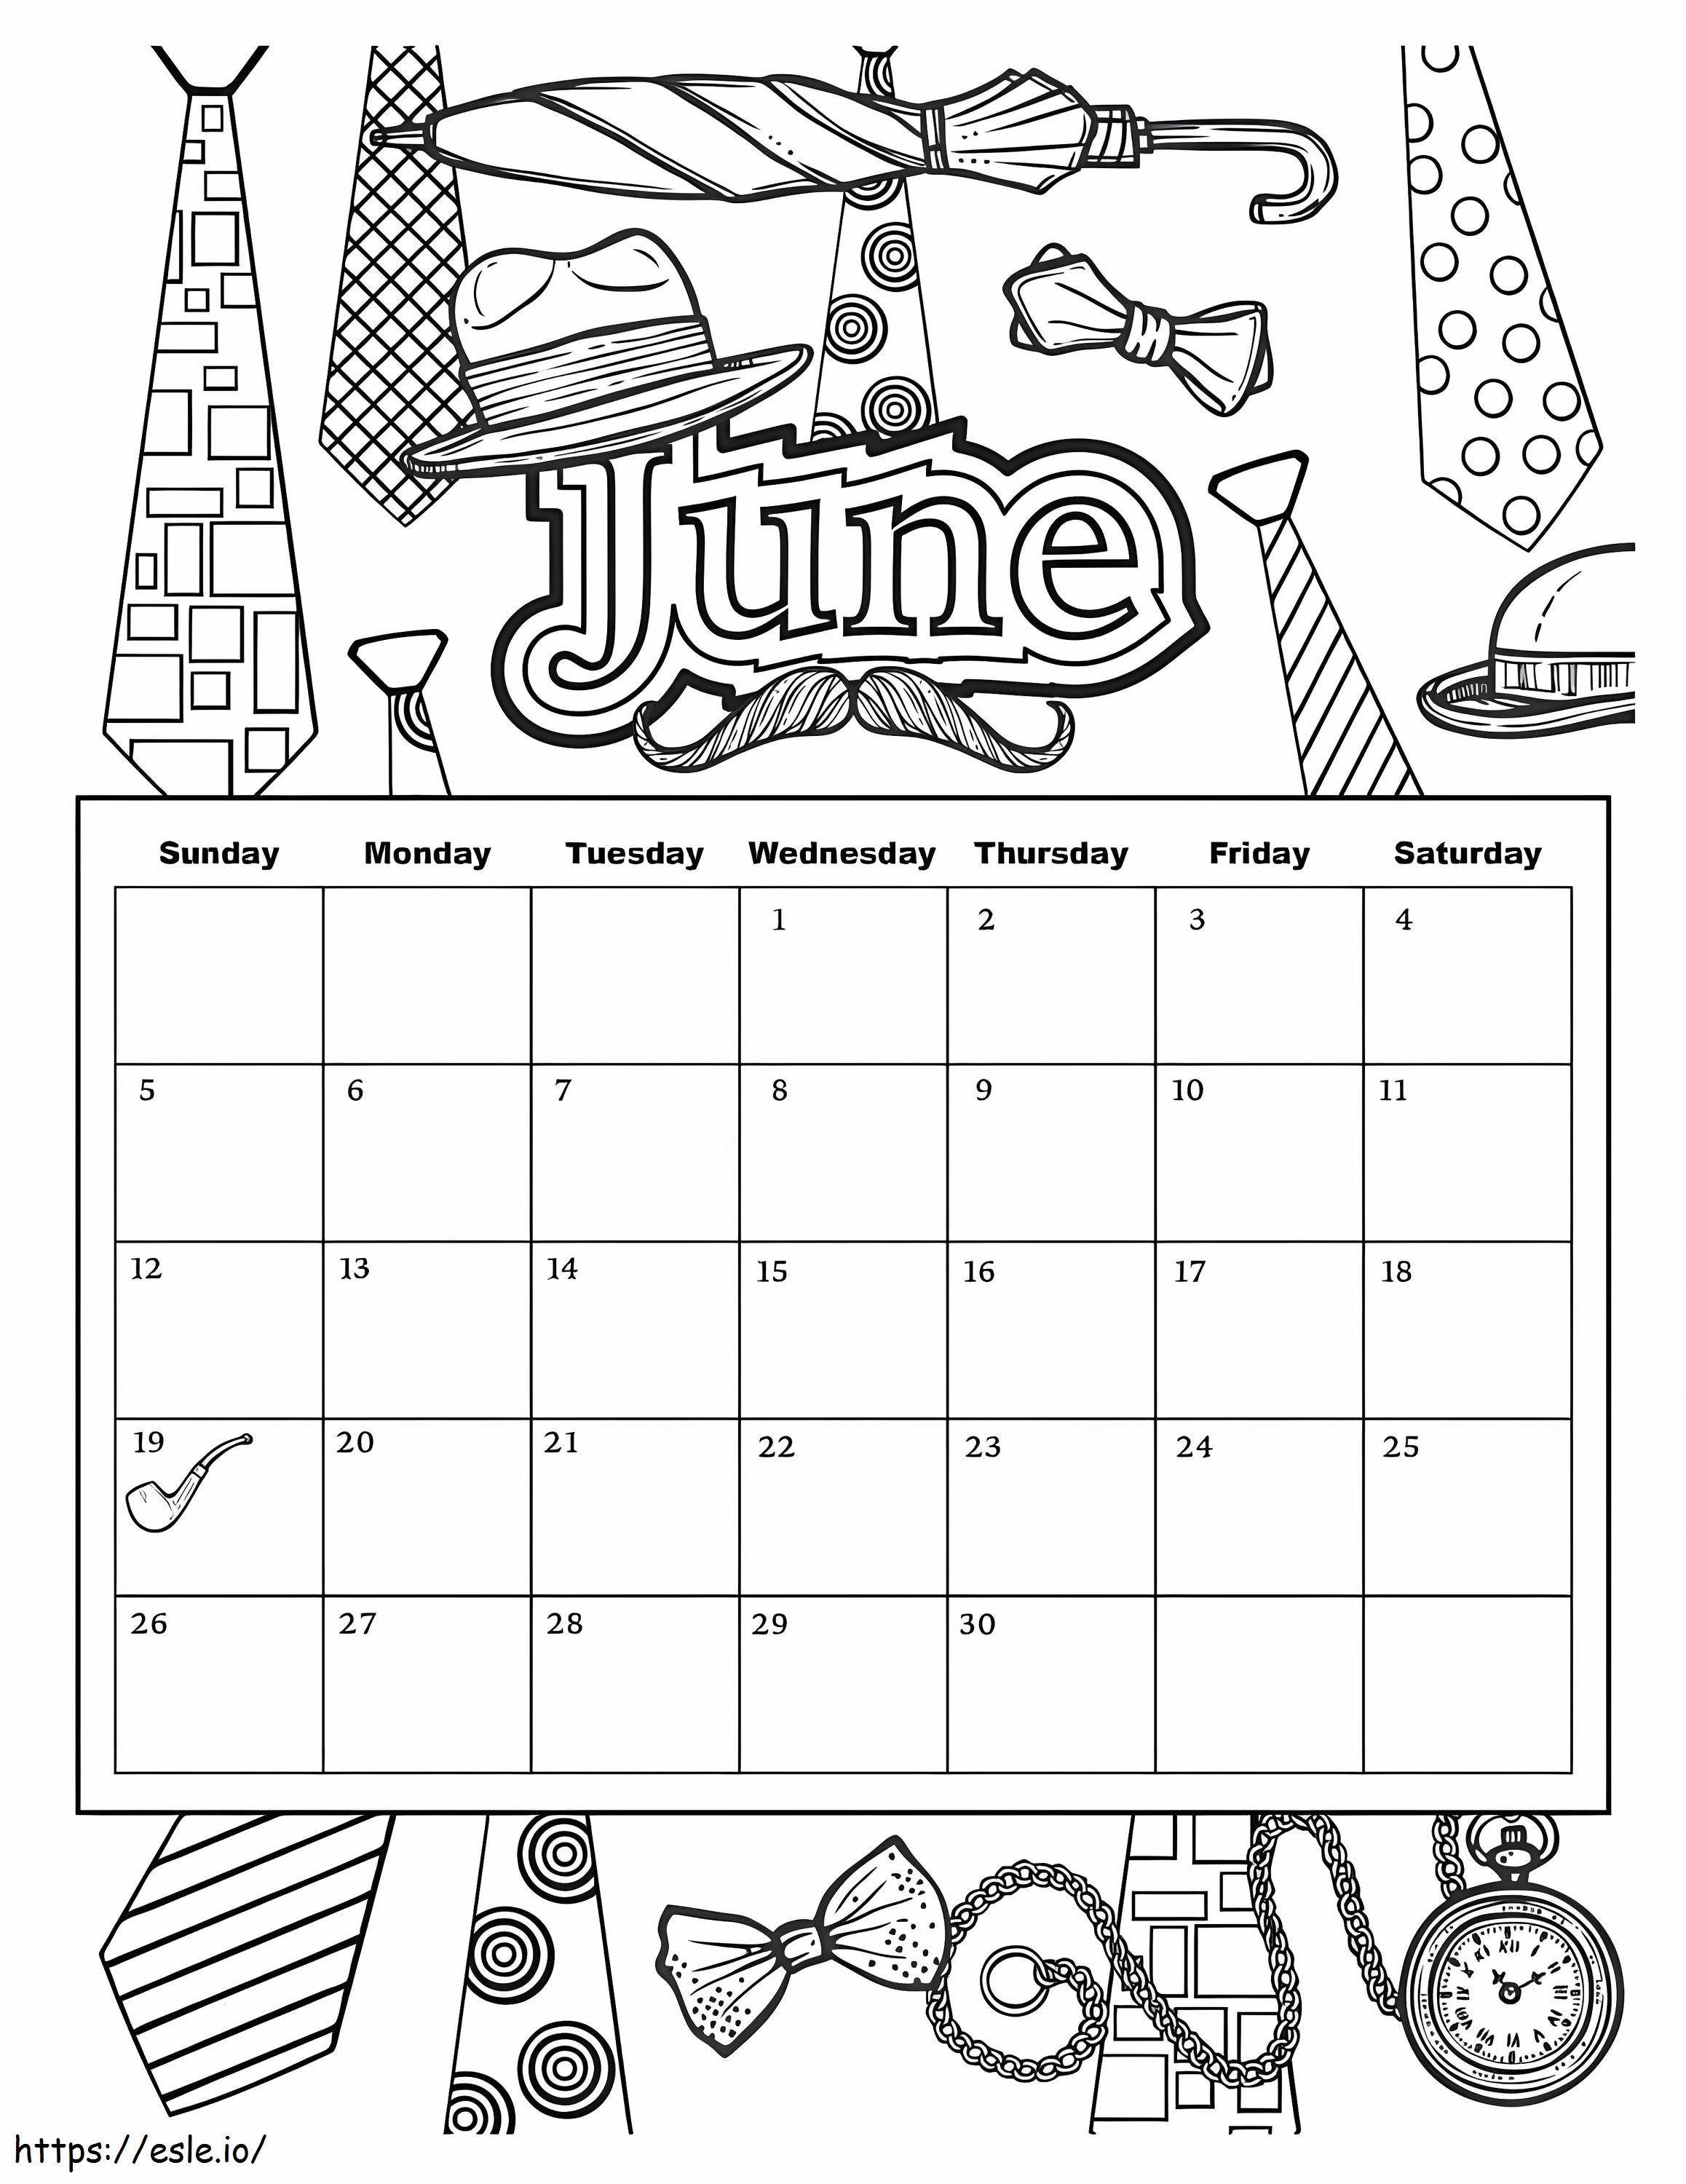 Calendário de junho de 2019 para colorir